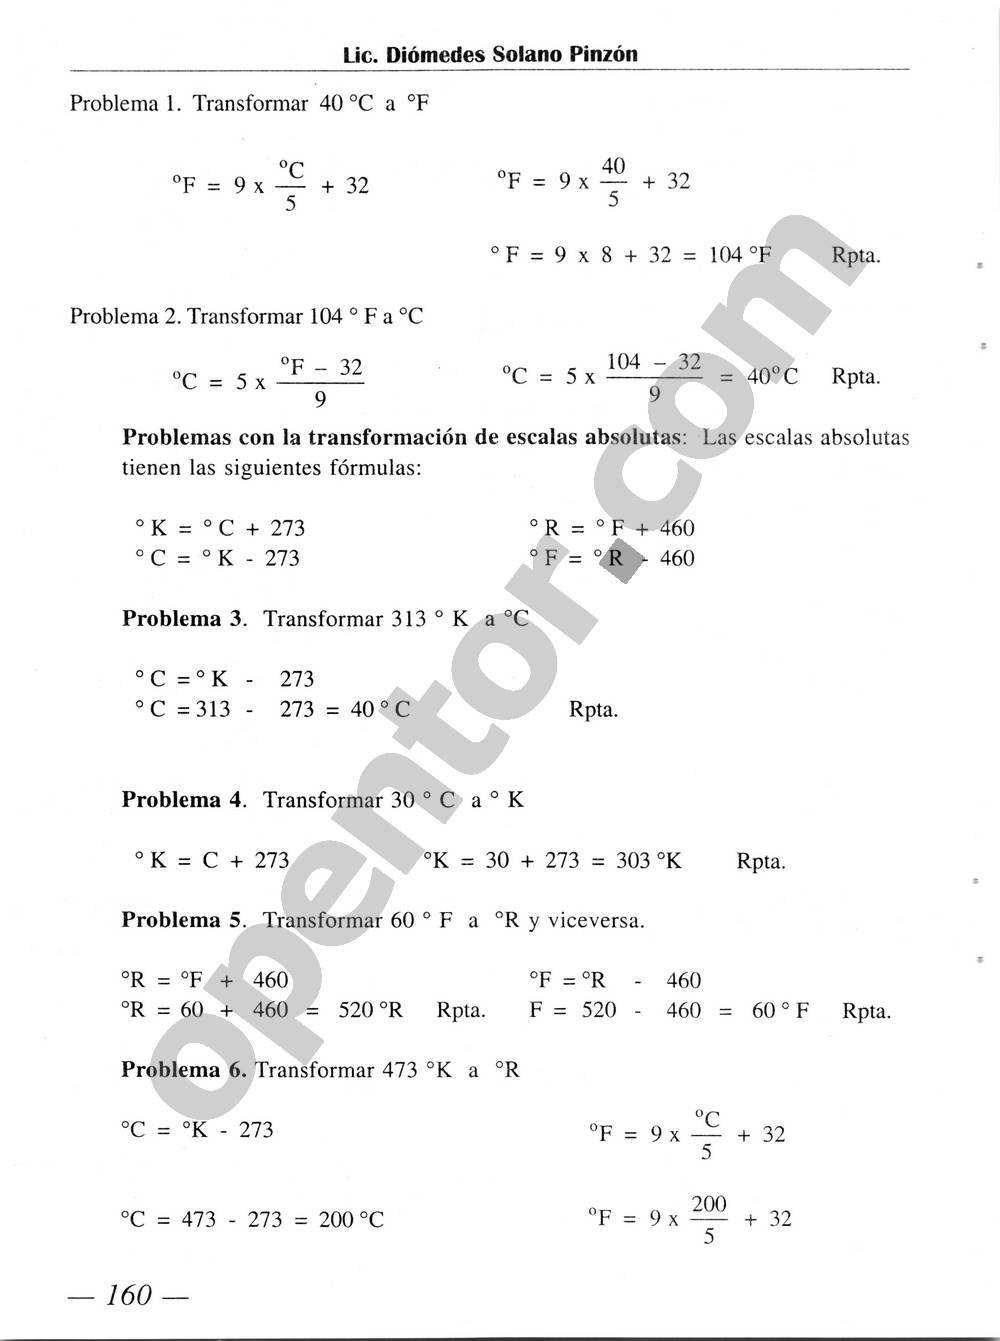 Química Simplificada de Diómedes Solano - Página 160